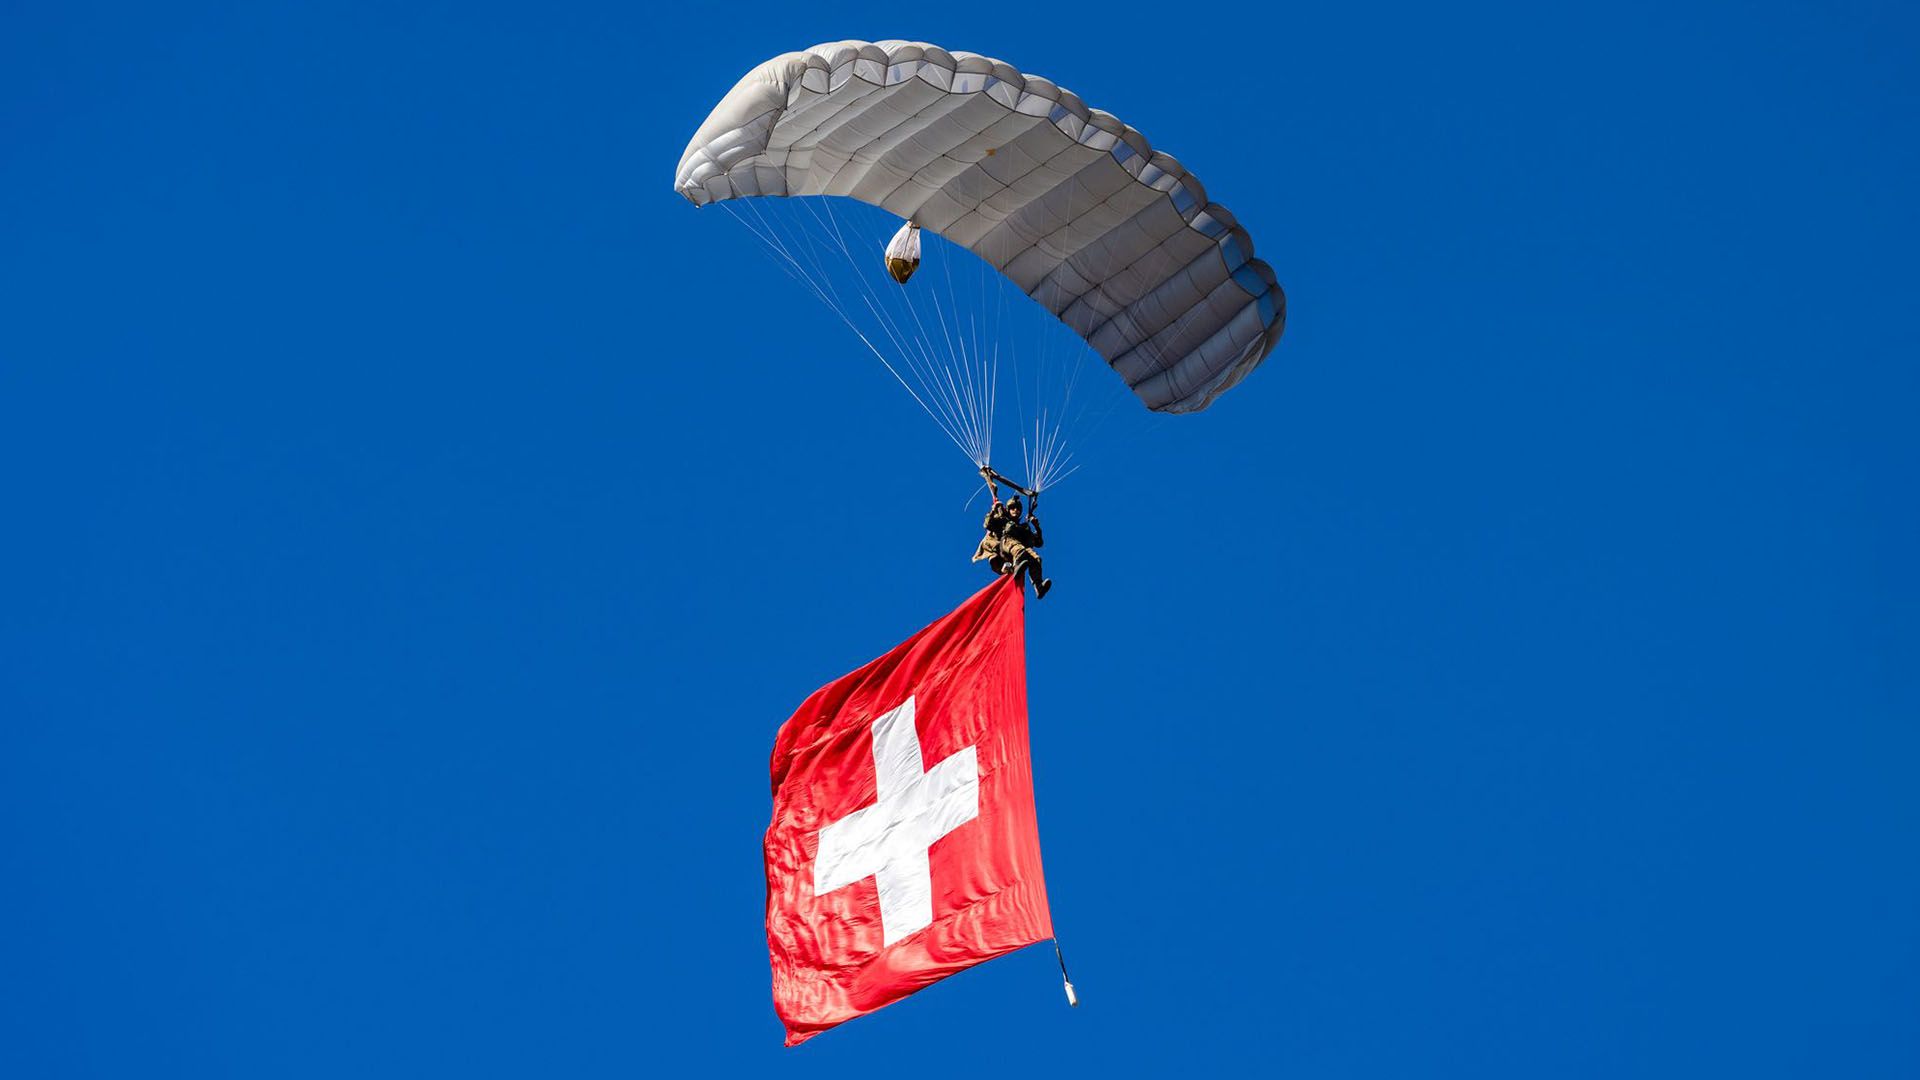 Fallschirm-Display-Team der Schweizer Armee. Kommando Spezialkräfte (KSK). Der Himmel ist klar und blau.